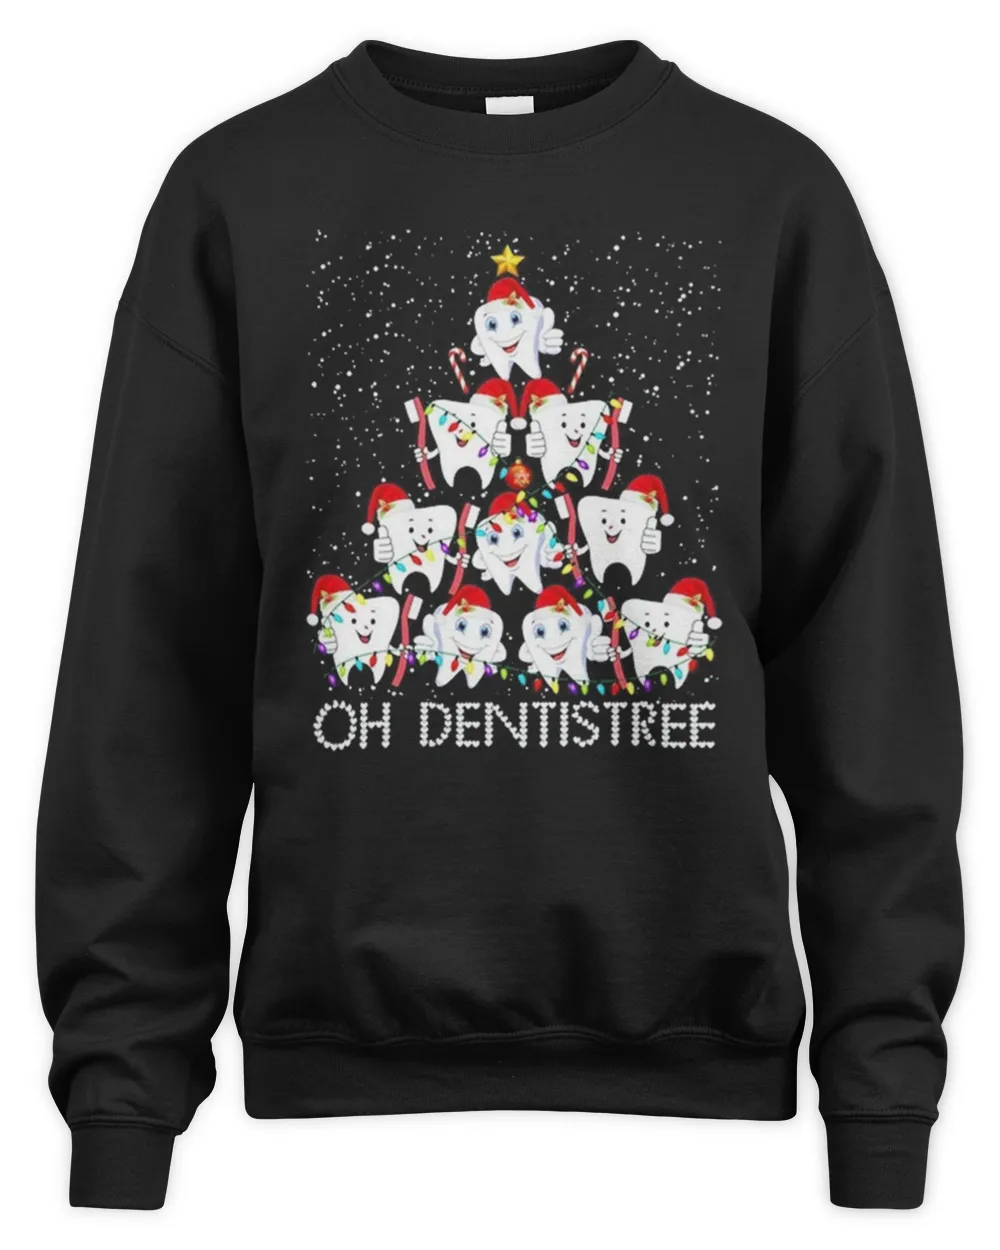 Dentist Christmas Tree T-Shirt